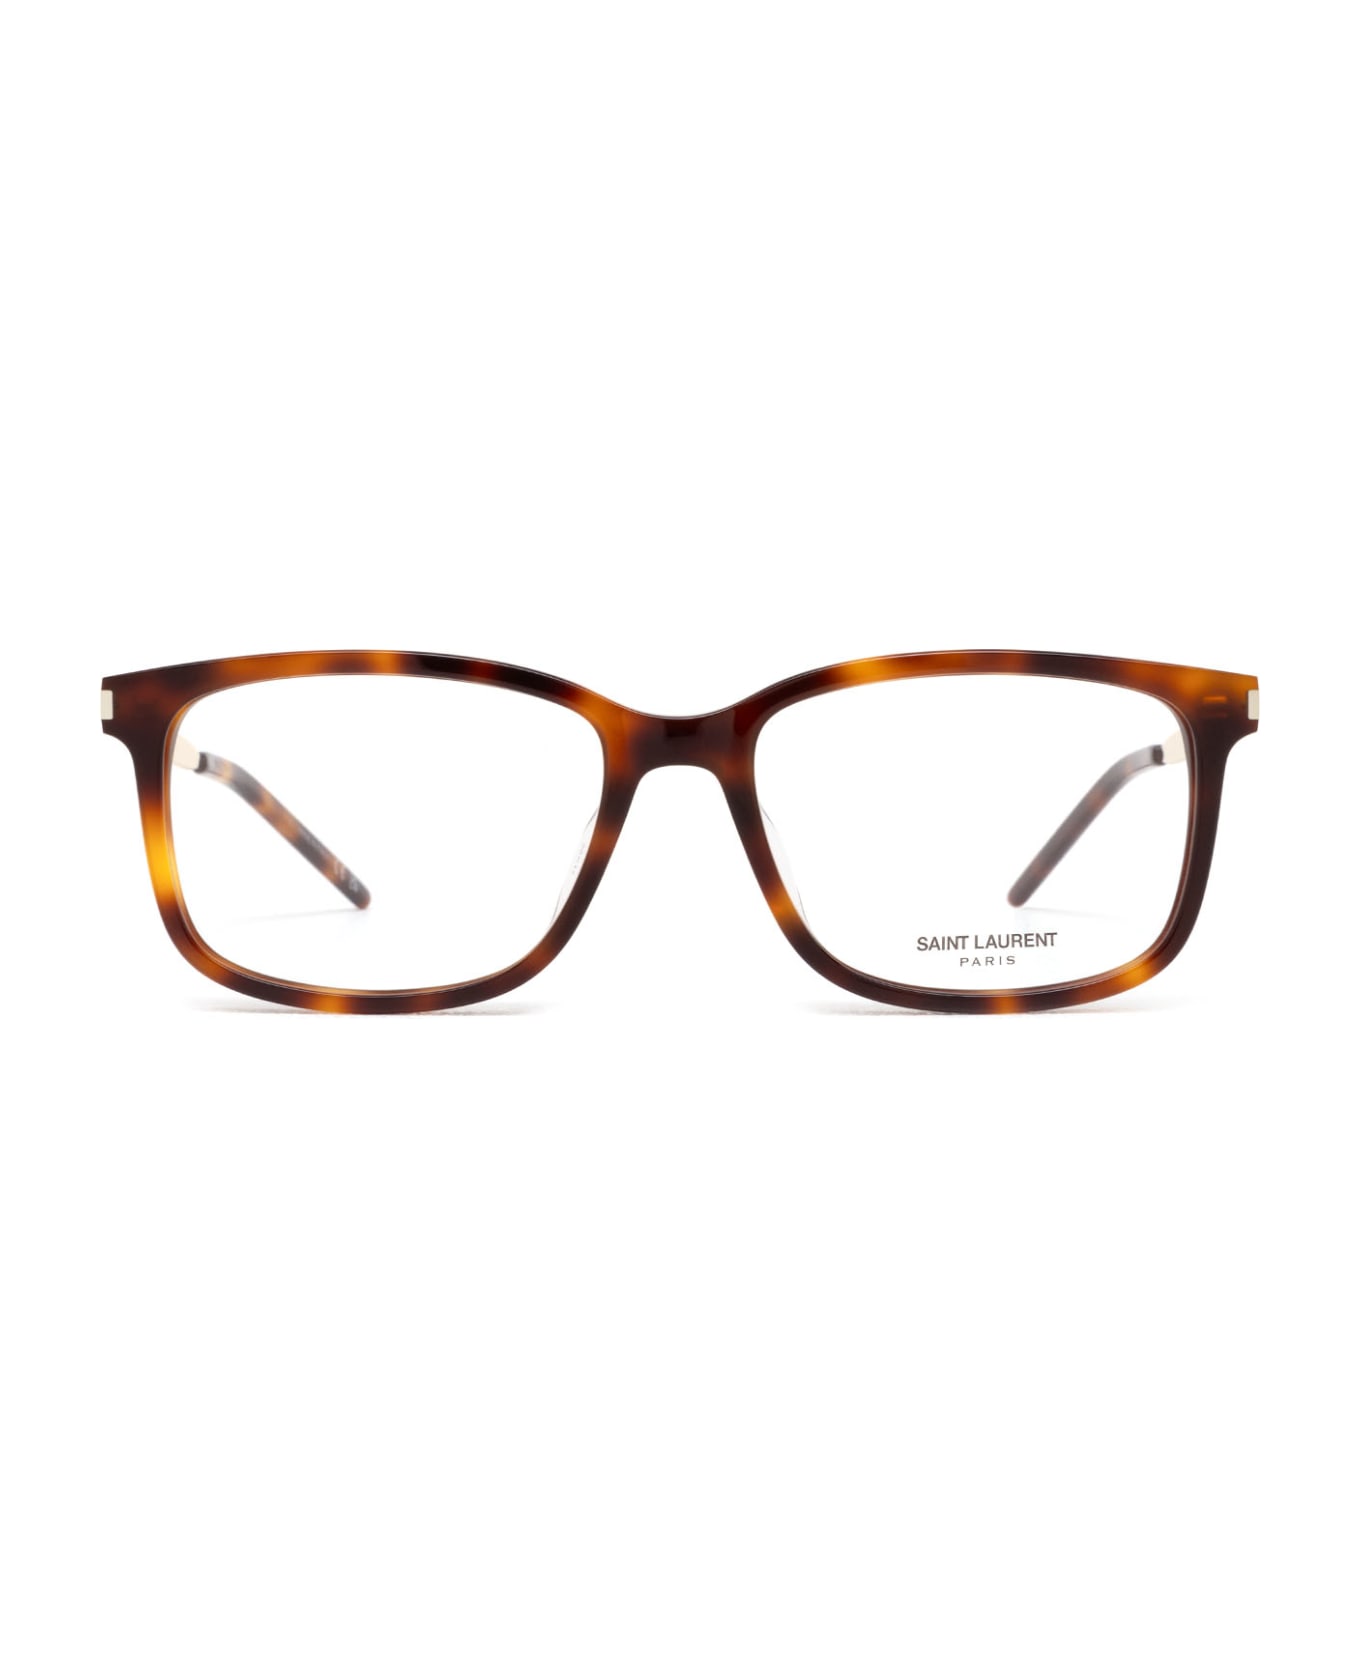 Saint Laurent Eyewear Sl 684/f Havana Glasses - Havana アイウェア